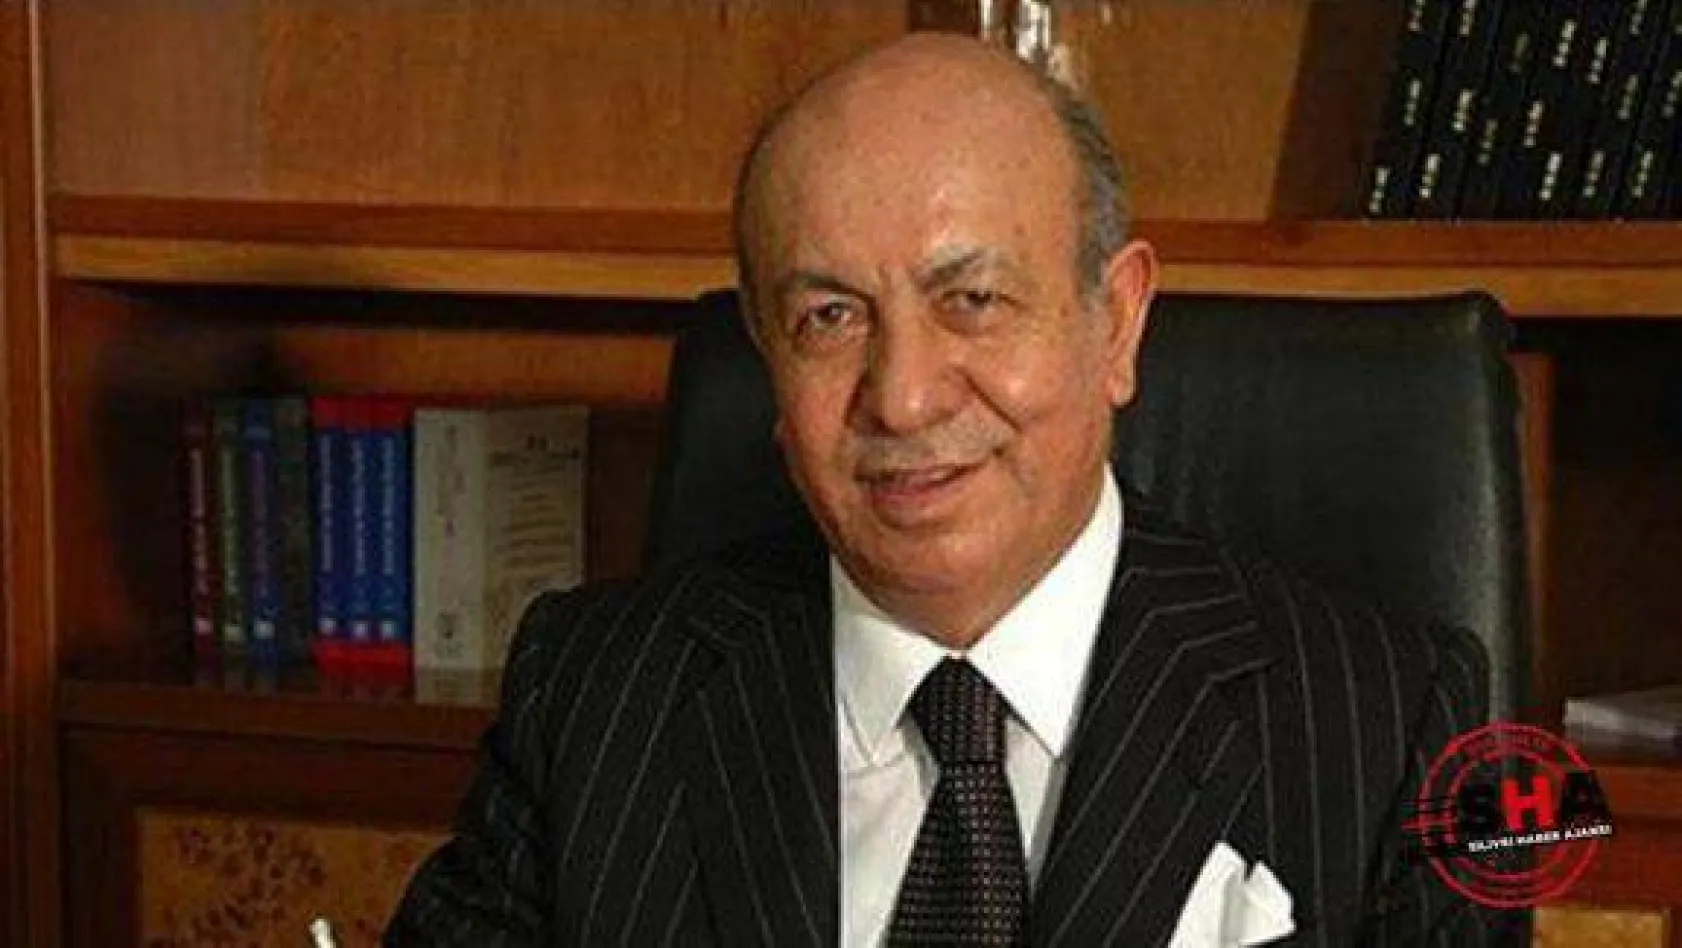 Arıkanlı Holding'in kurucusu İbrahim Arıkan hayatını kaybetti